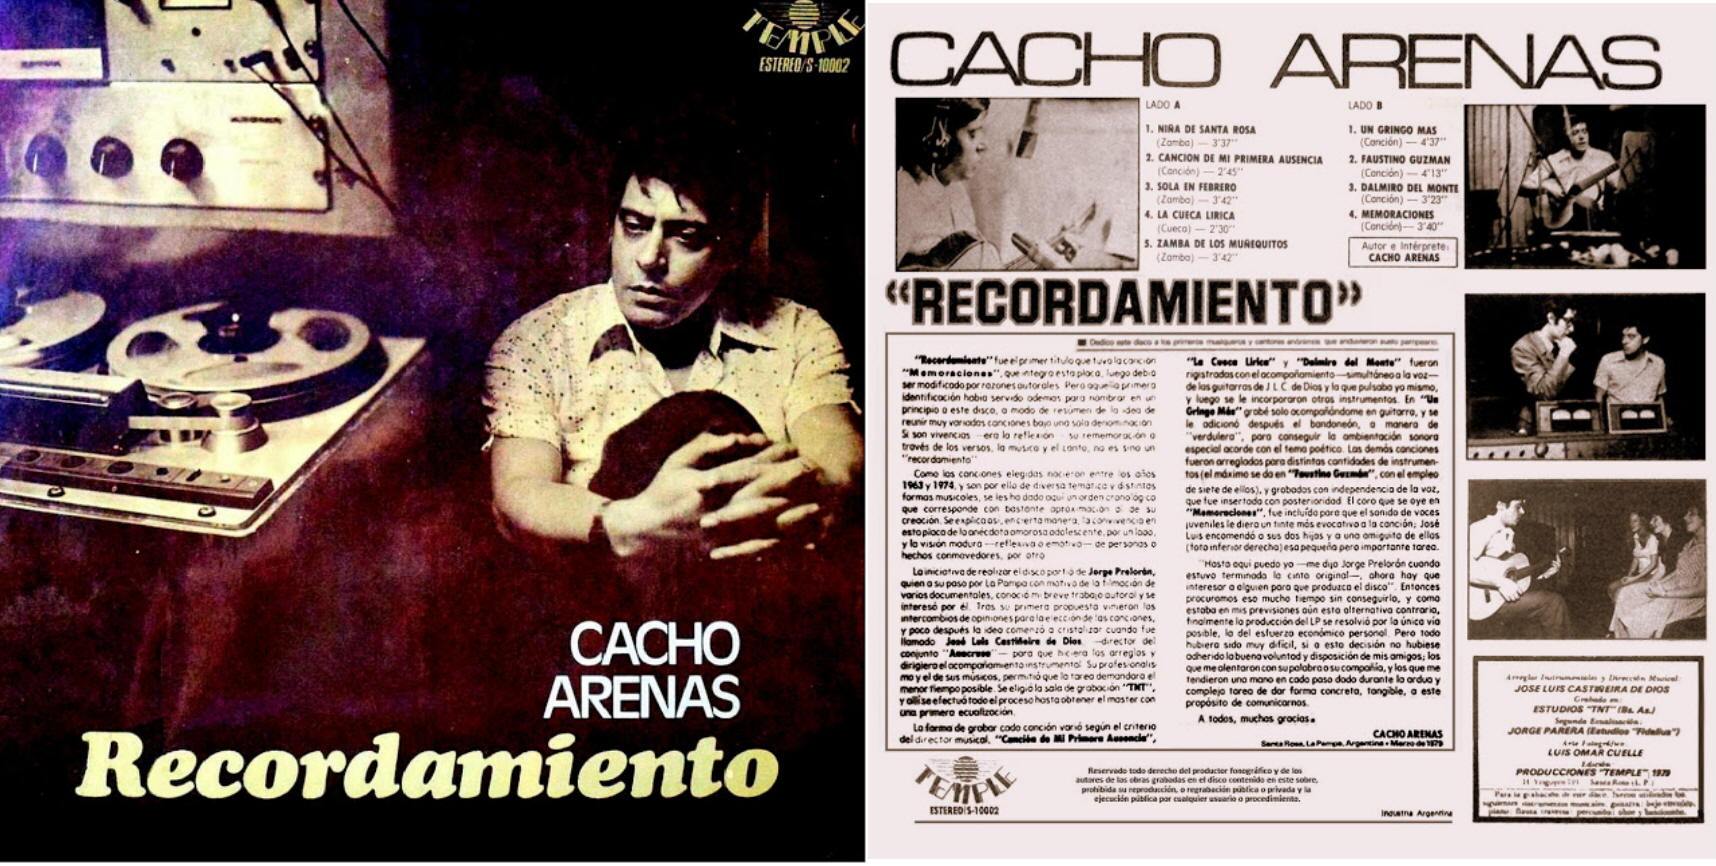 Lp Vinilo El Disco Del Año Codiscos Volumen 9 1976